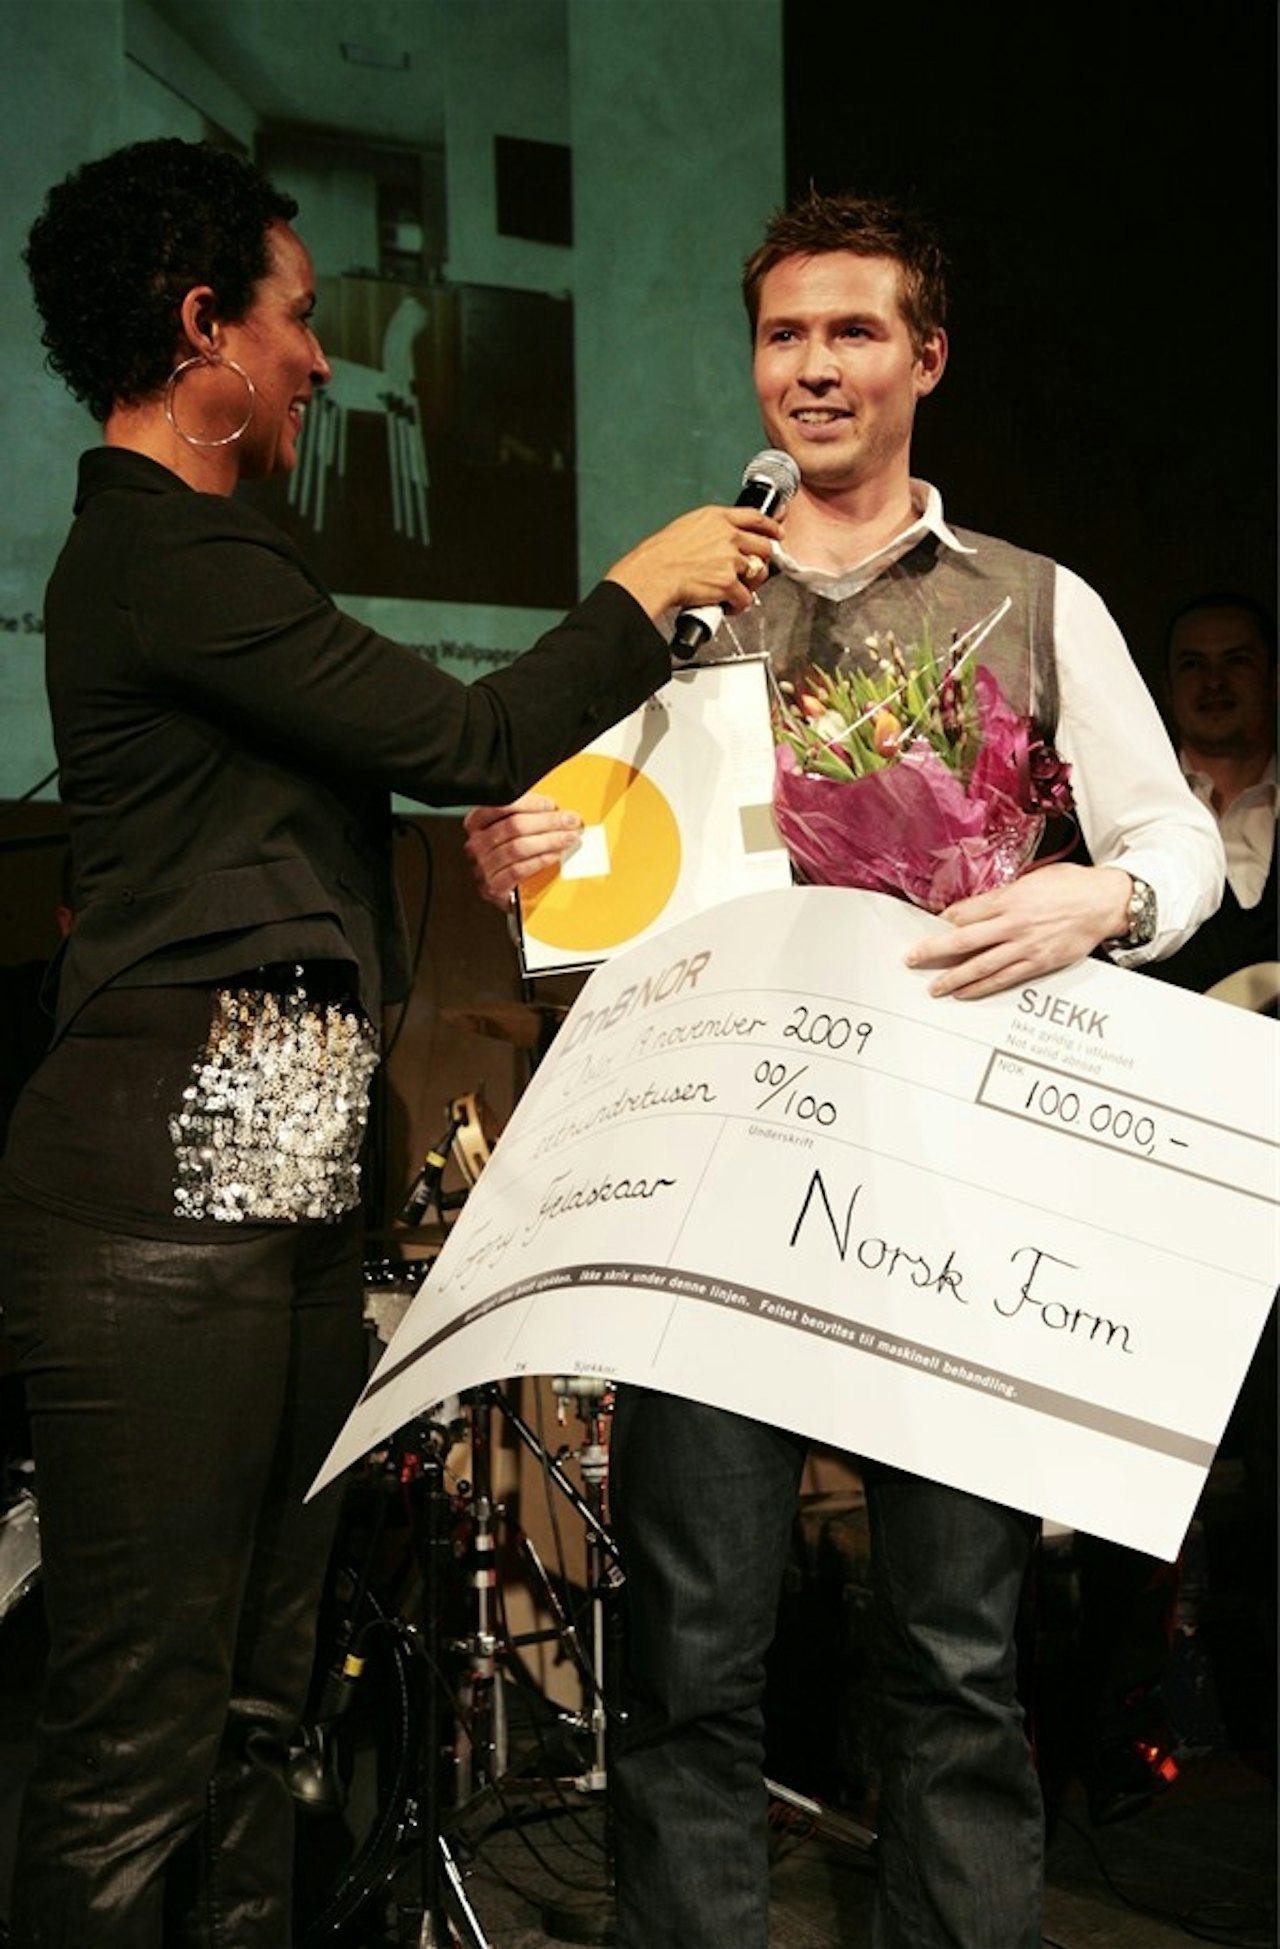 PRISVINNER:  Torgny fikk i 2009 pris fra Norsk Form. Årets Unge Norske Designer.